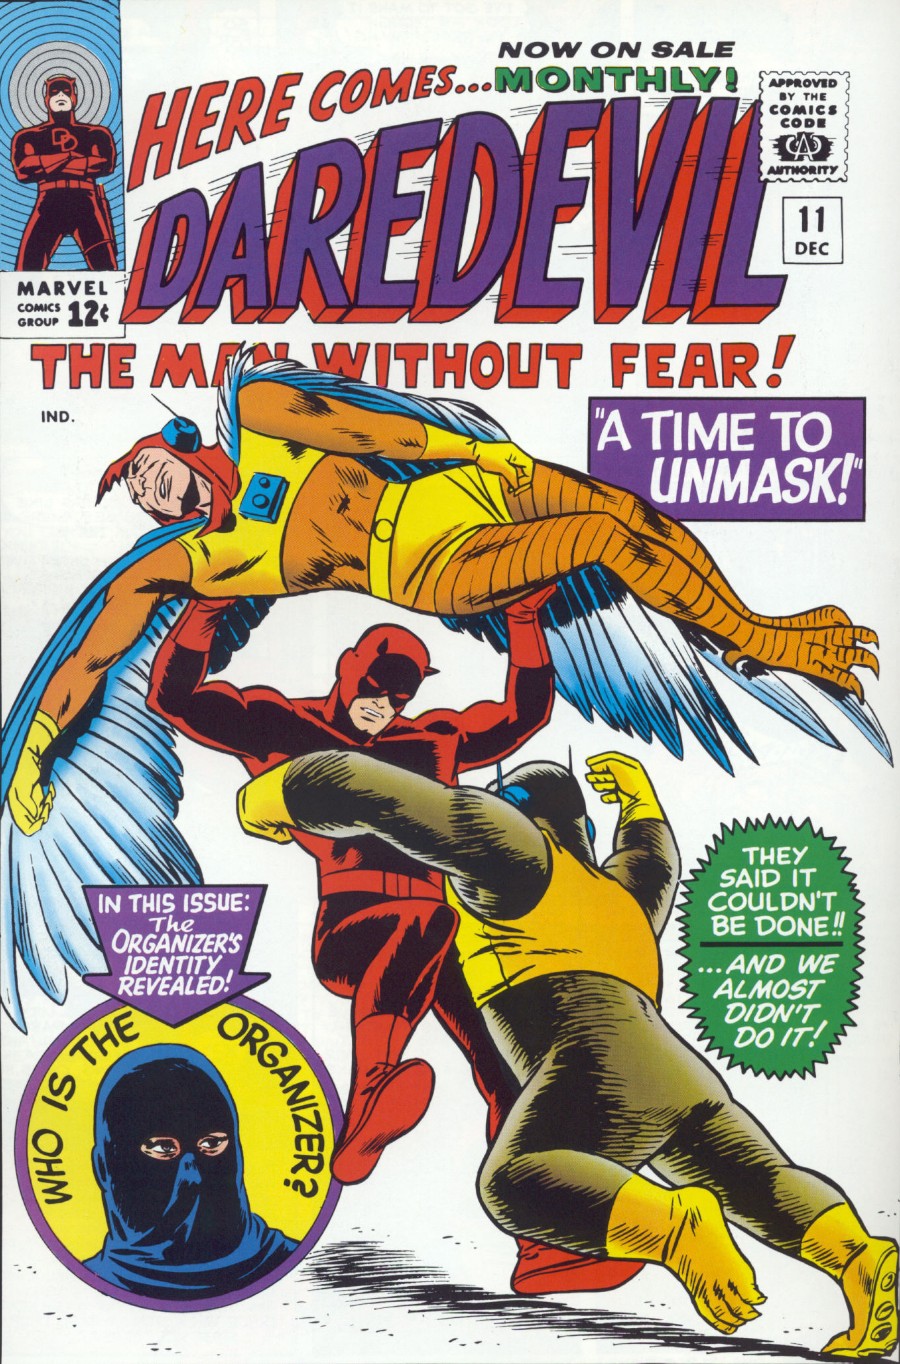 Daredevil Vol. 1 #11